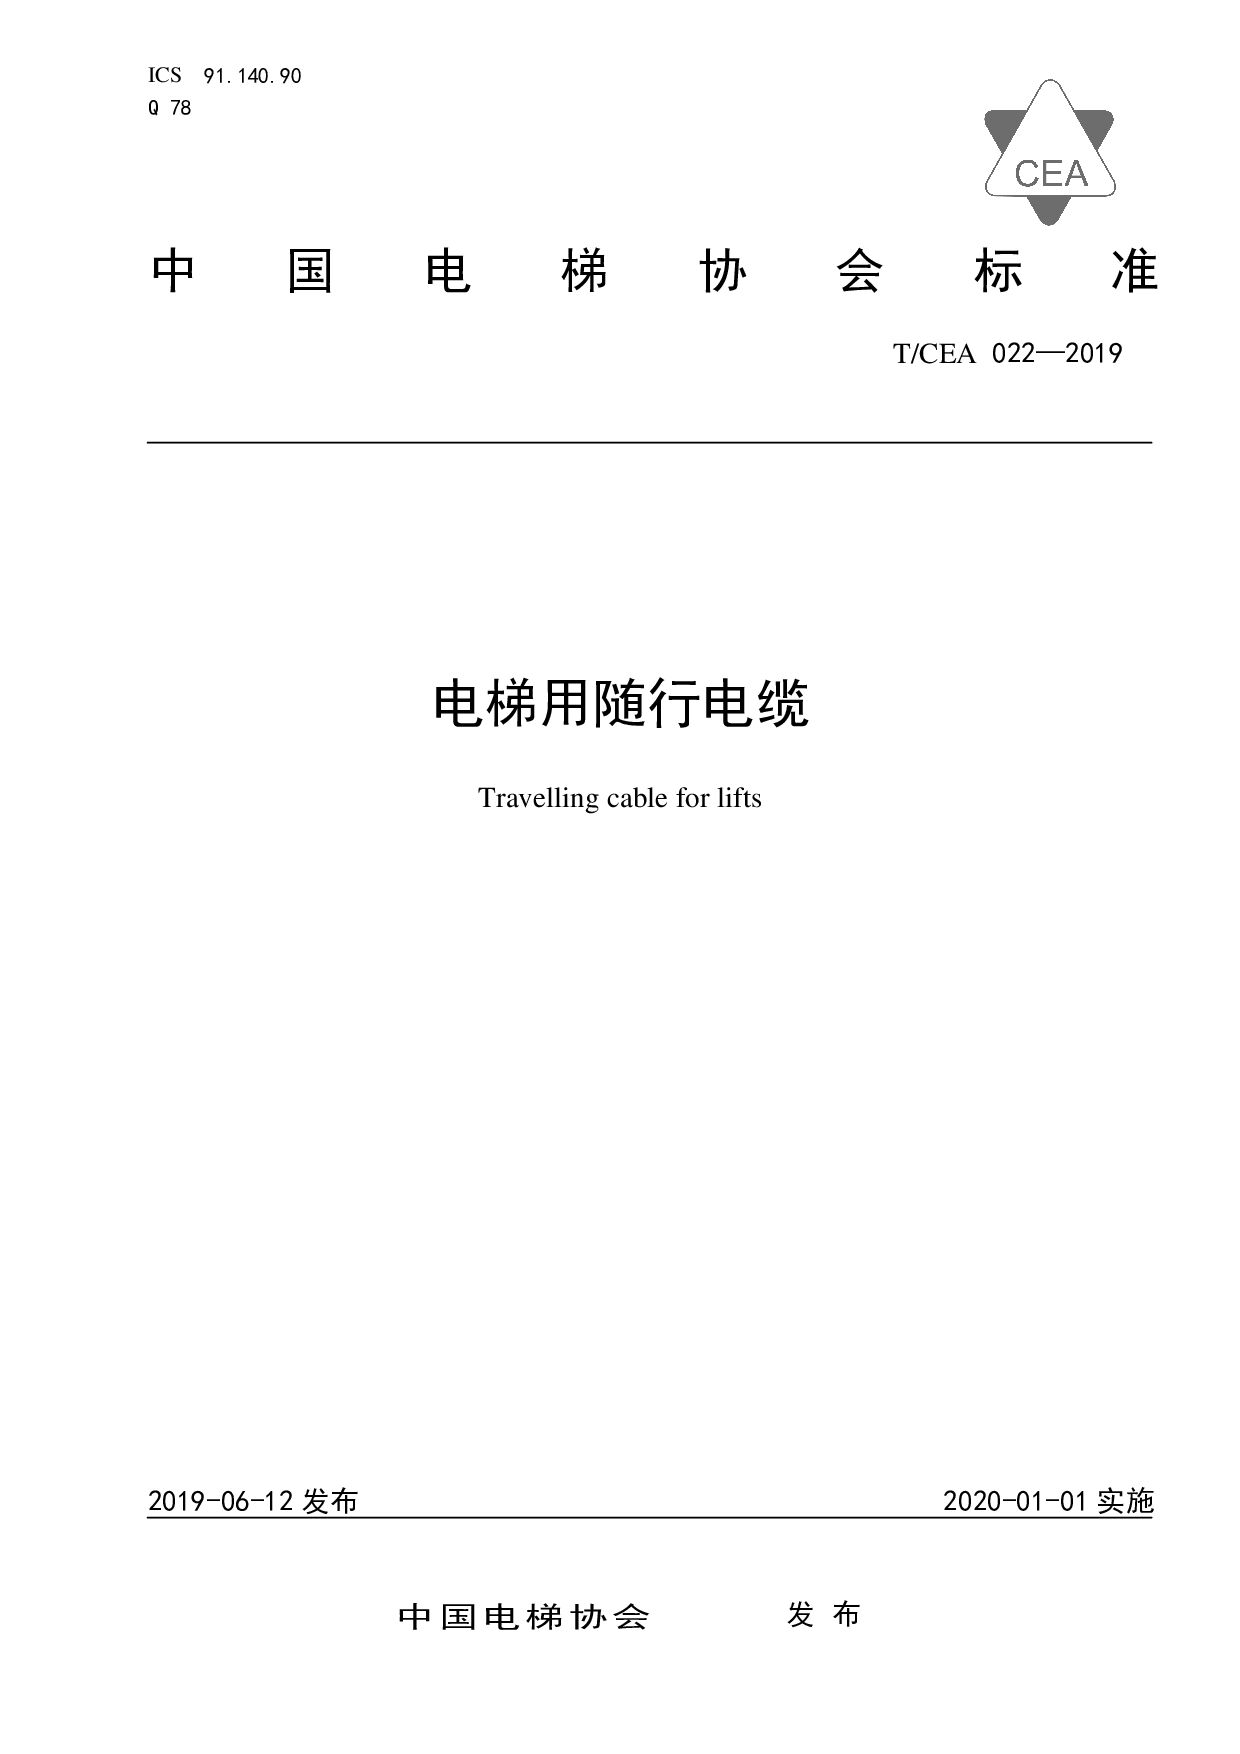 T/CEA 022-2019封面图